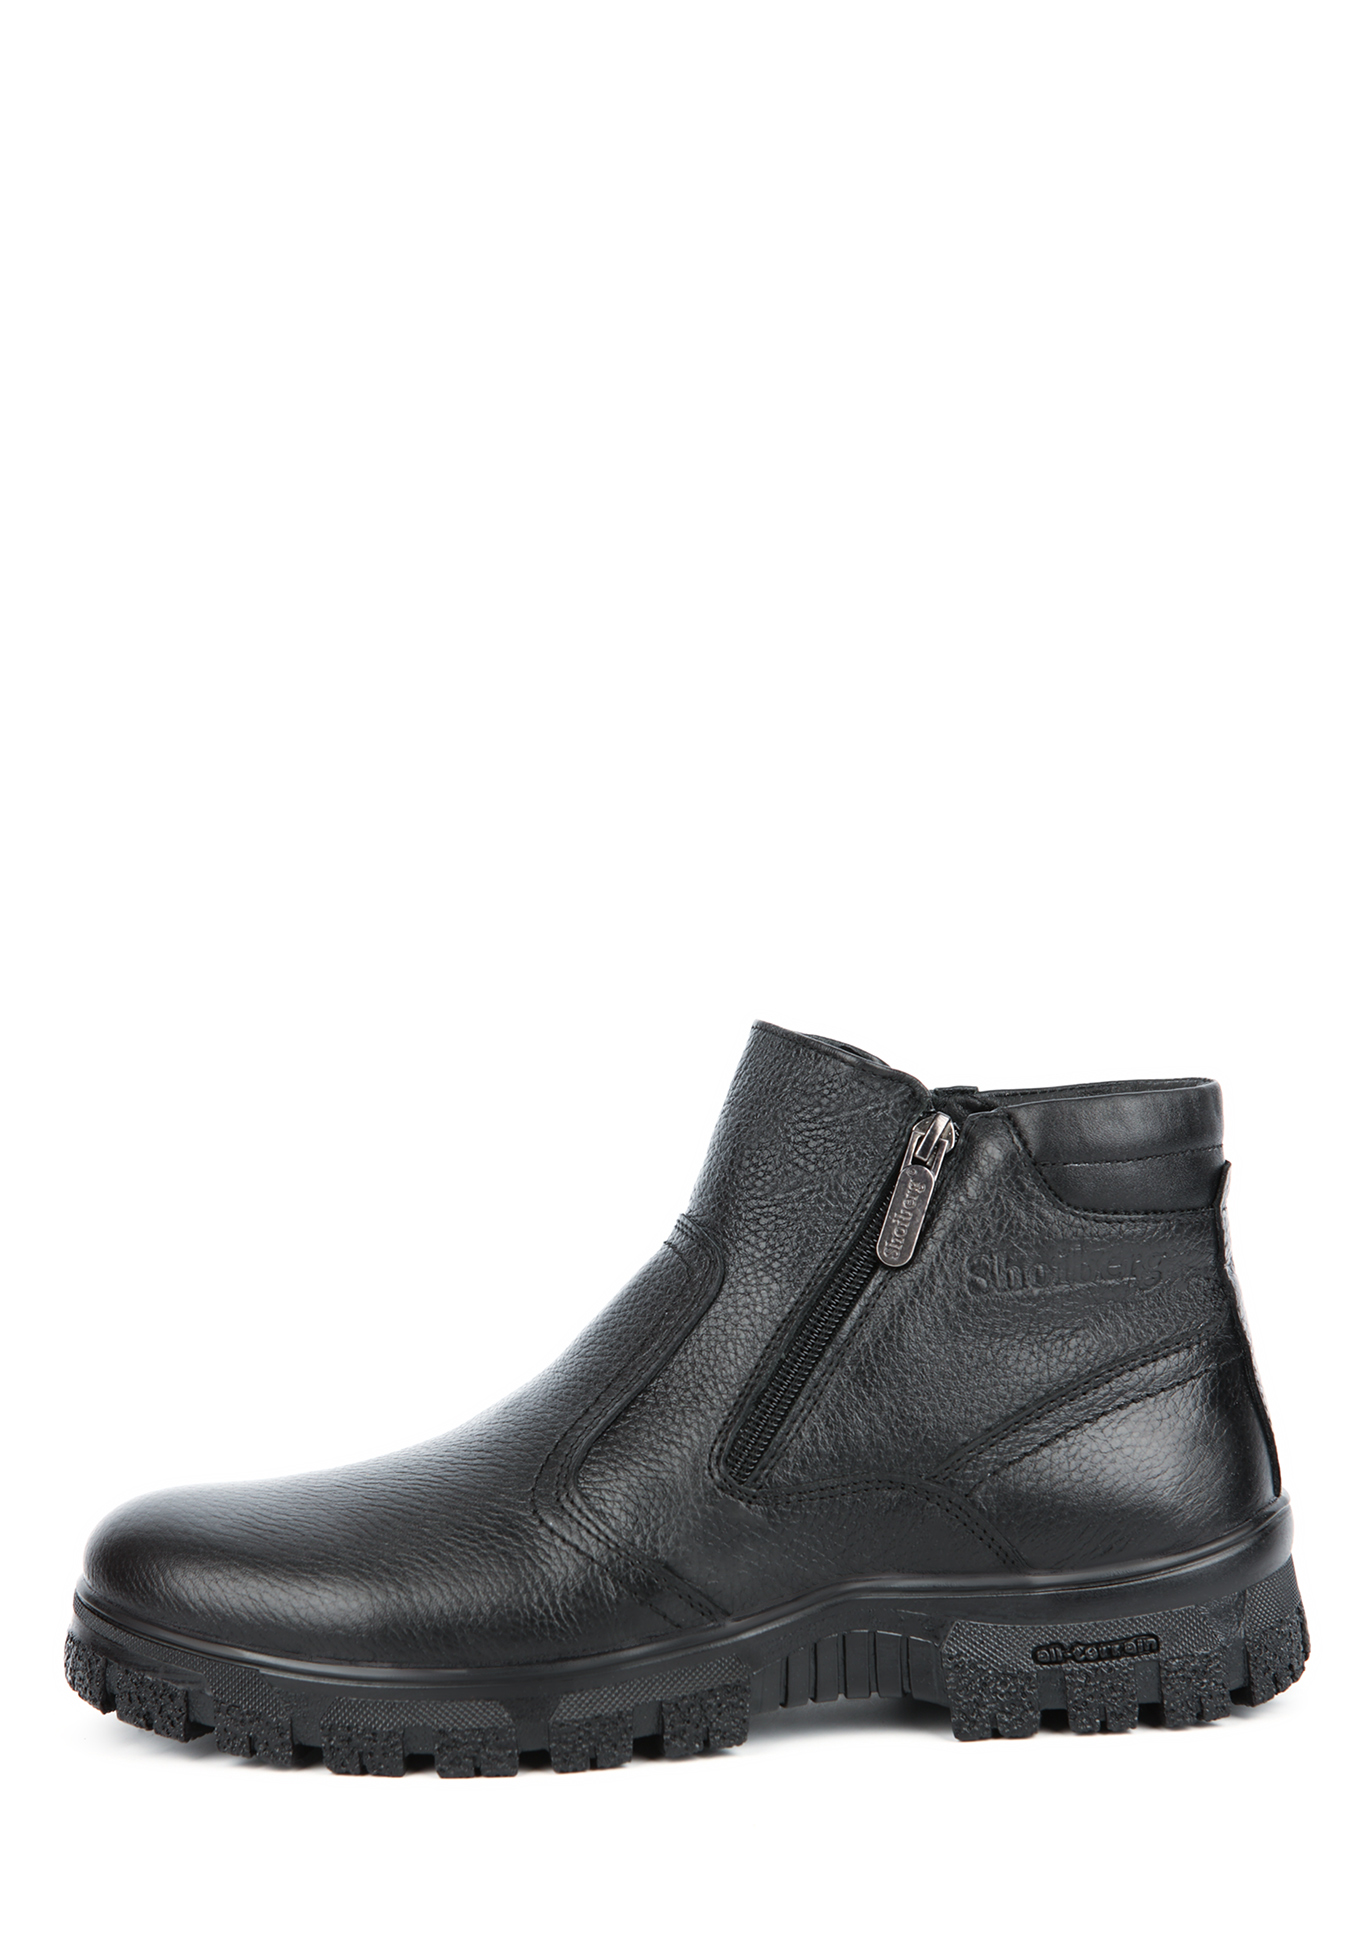 Ботинки мужские "Леон" Shoiberg, размер 41, цвет черный - фото 3